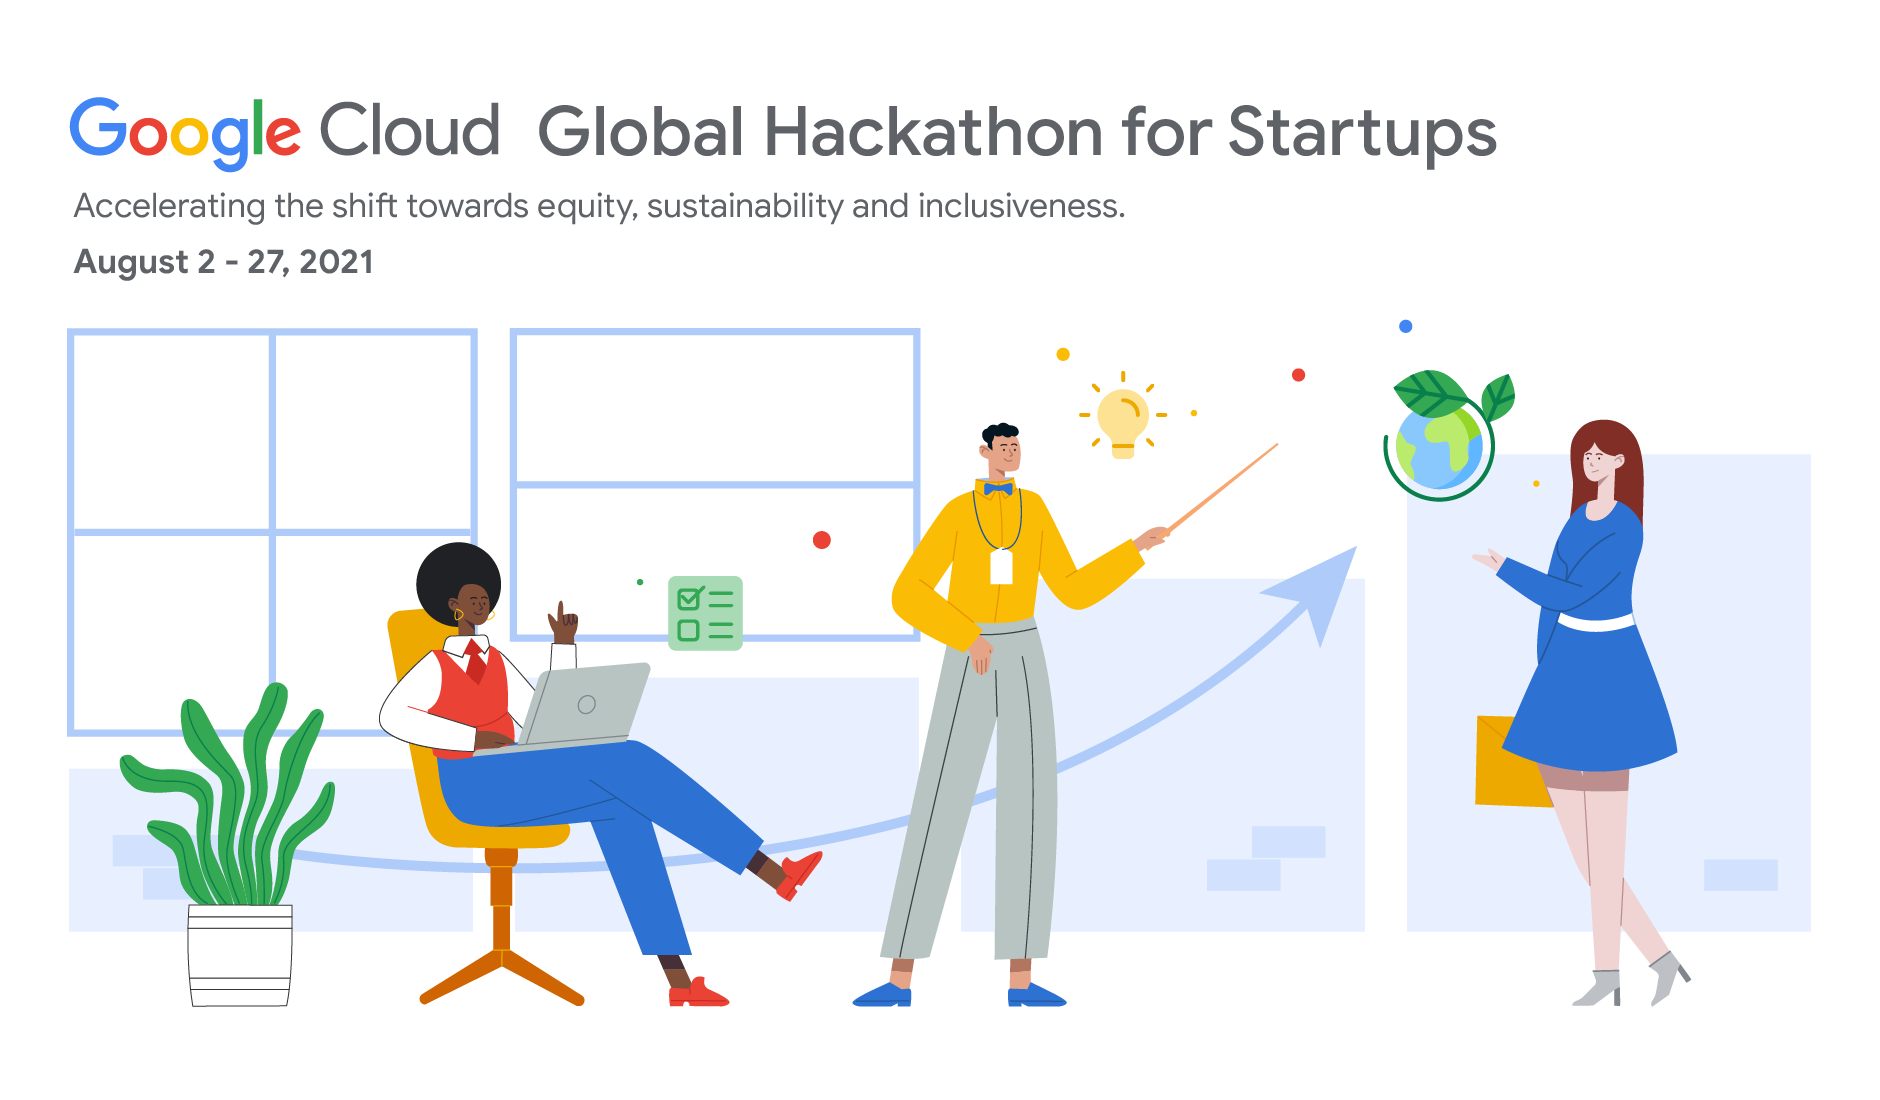 Google Cloud Global Hackathon for Startups